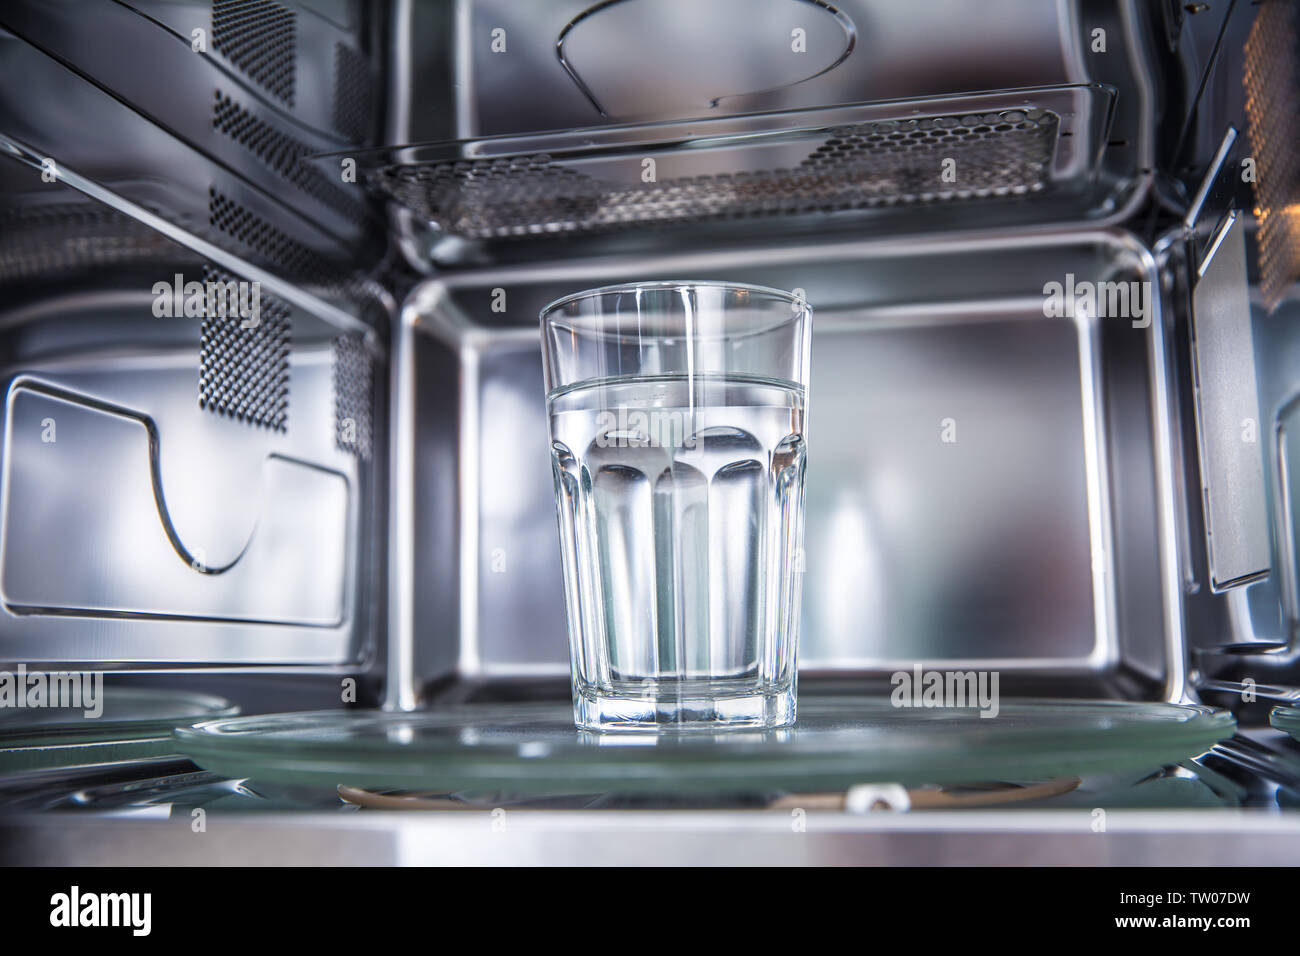 Вода свч. Микроволновка внутри нержавейка. Микроволновка и стакан воды. Стакан воды в микроволновке. Чистые бокалы в посудомойке.